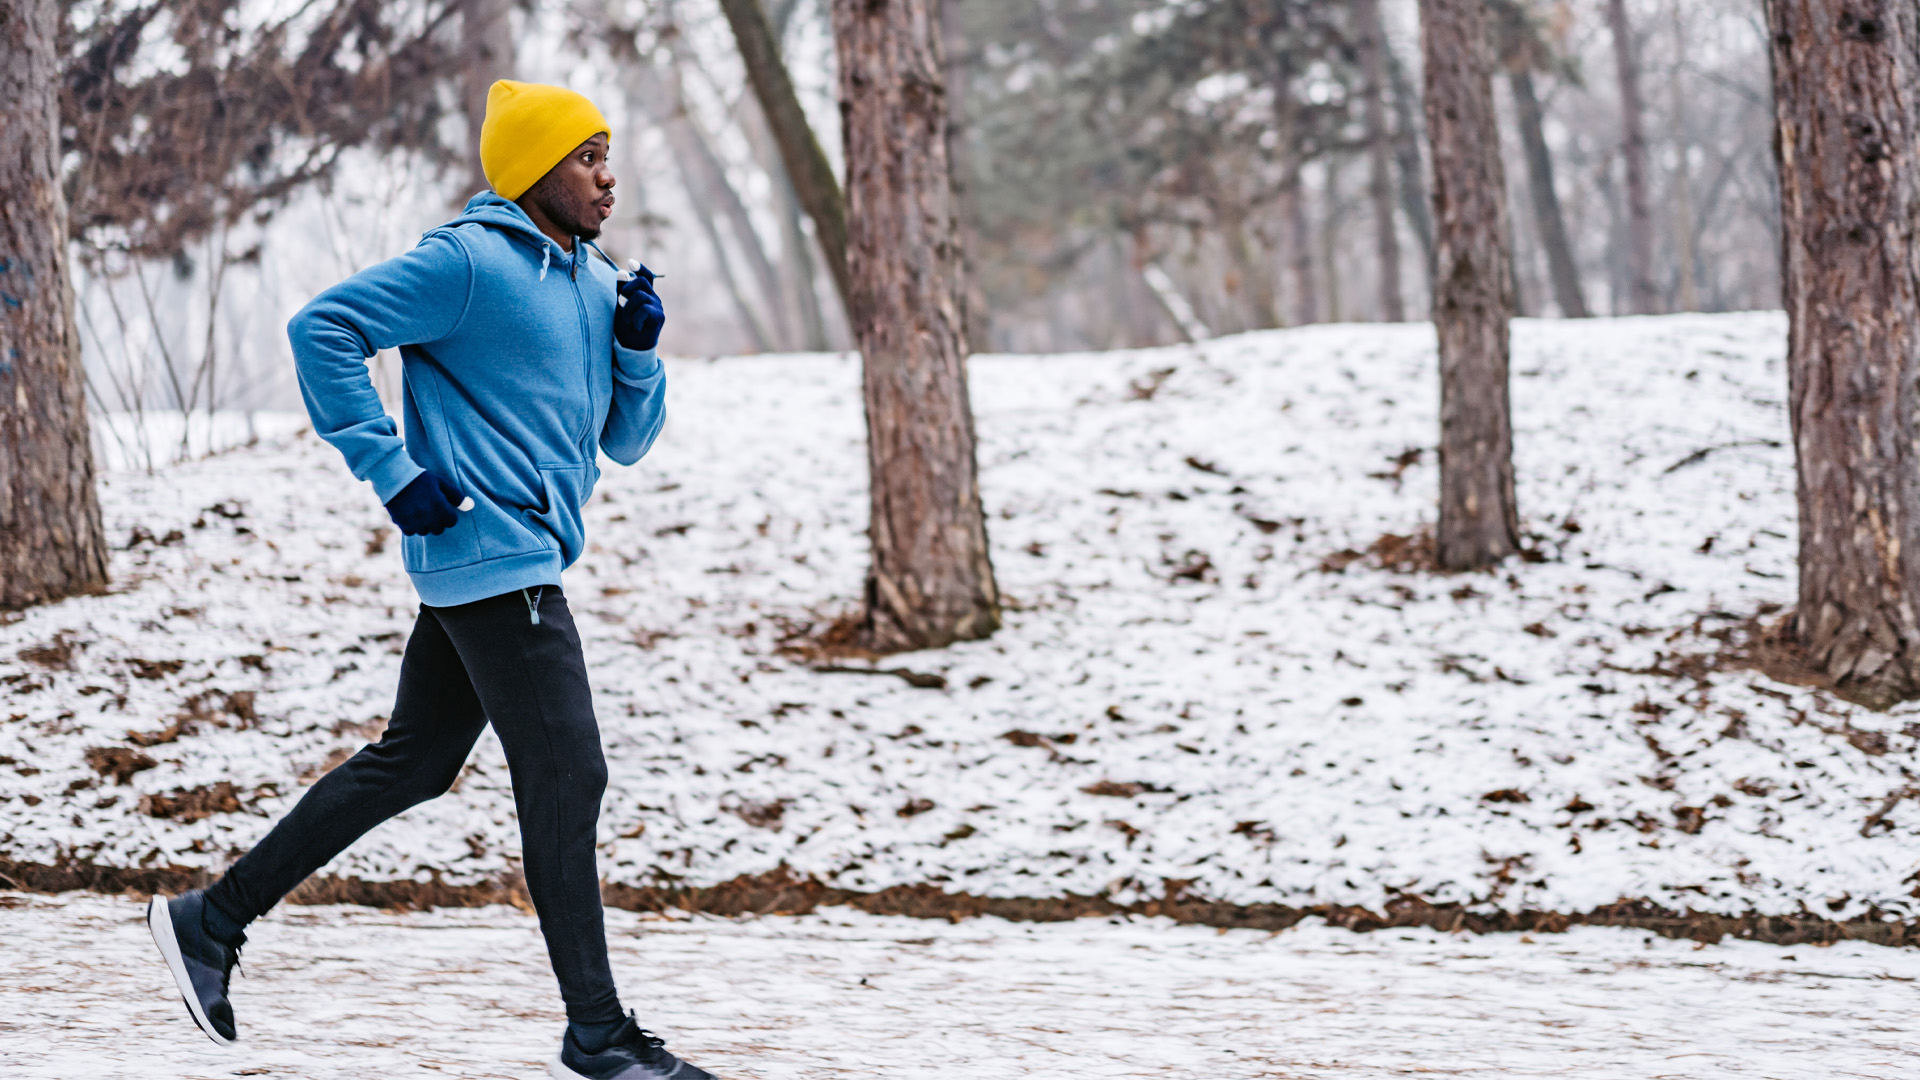 Le jogging en hiver : conseils pour courir sainement dans le froid